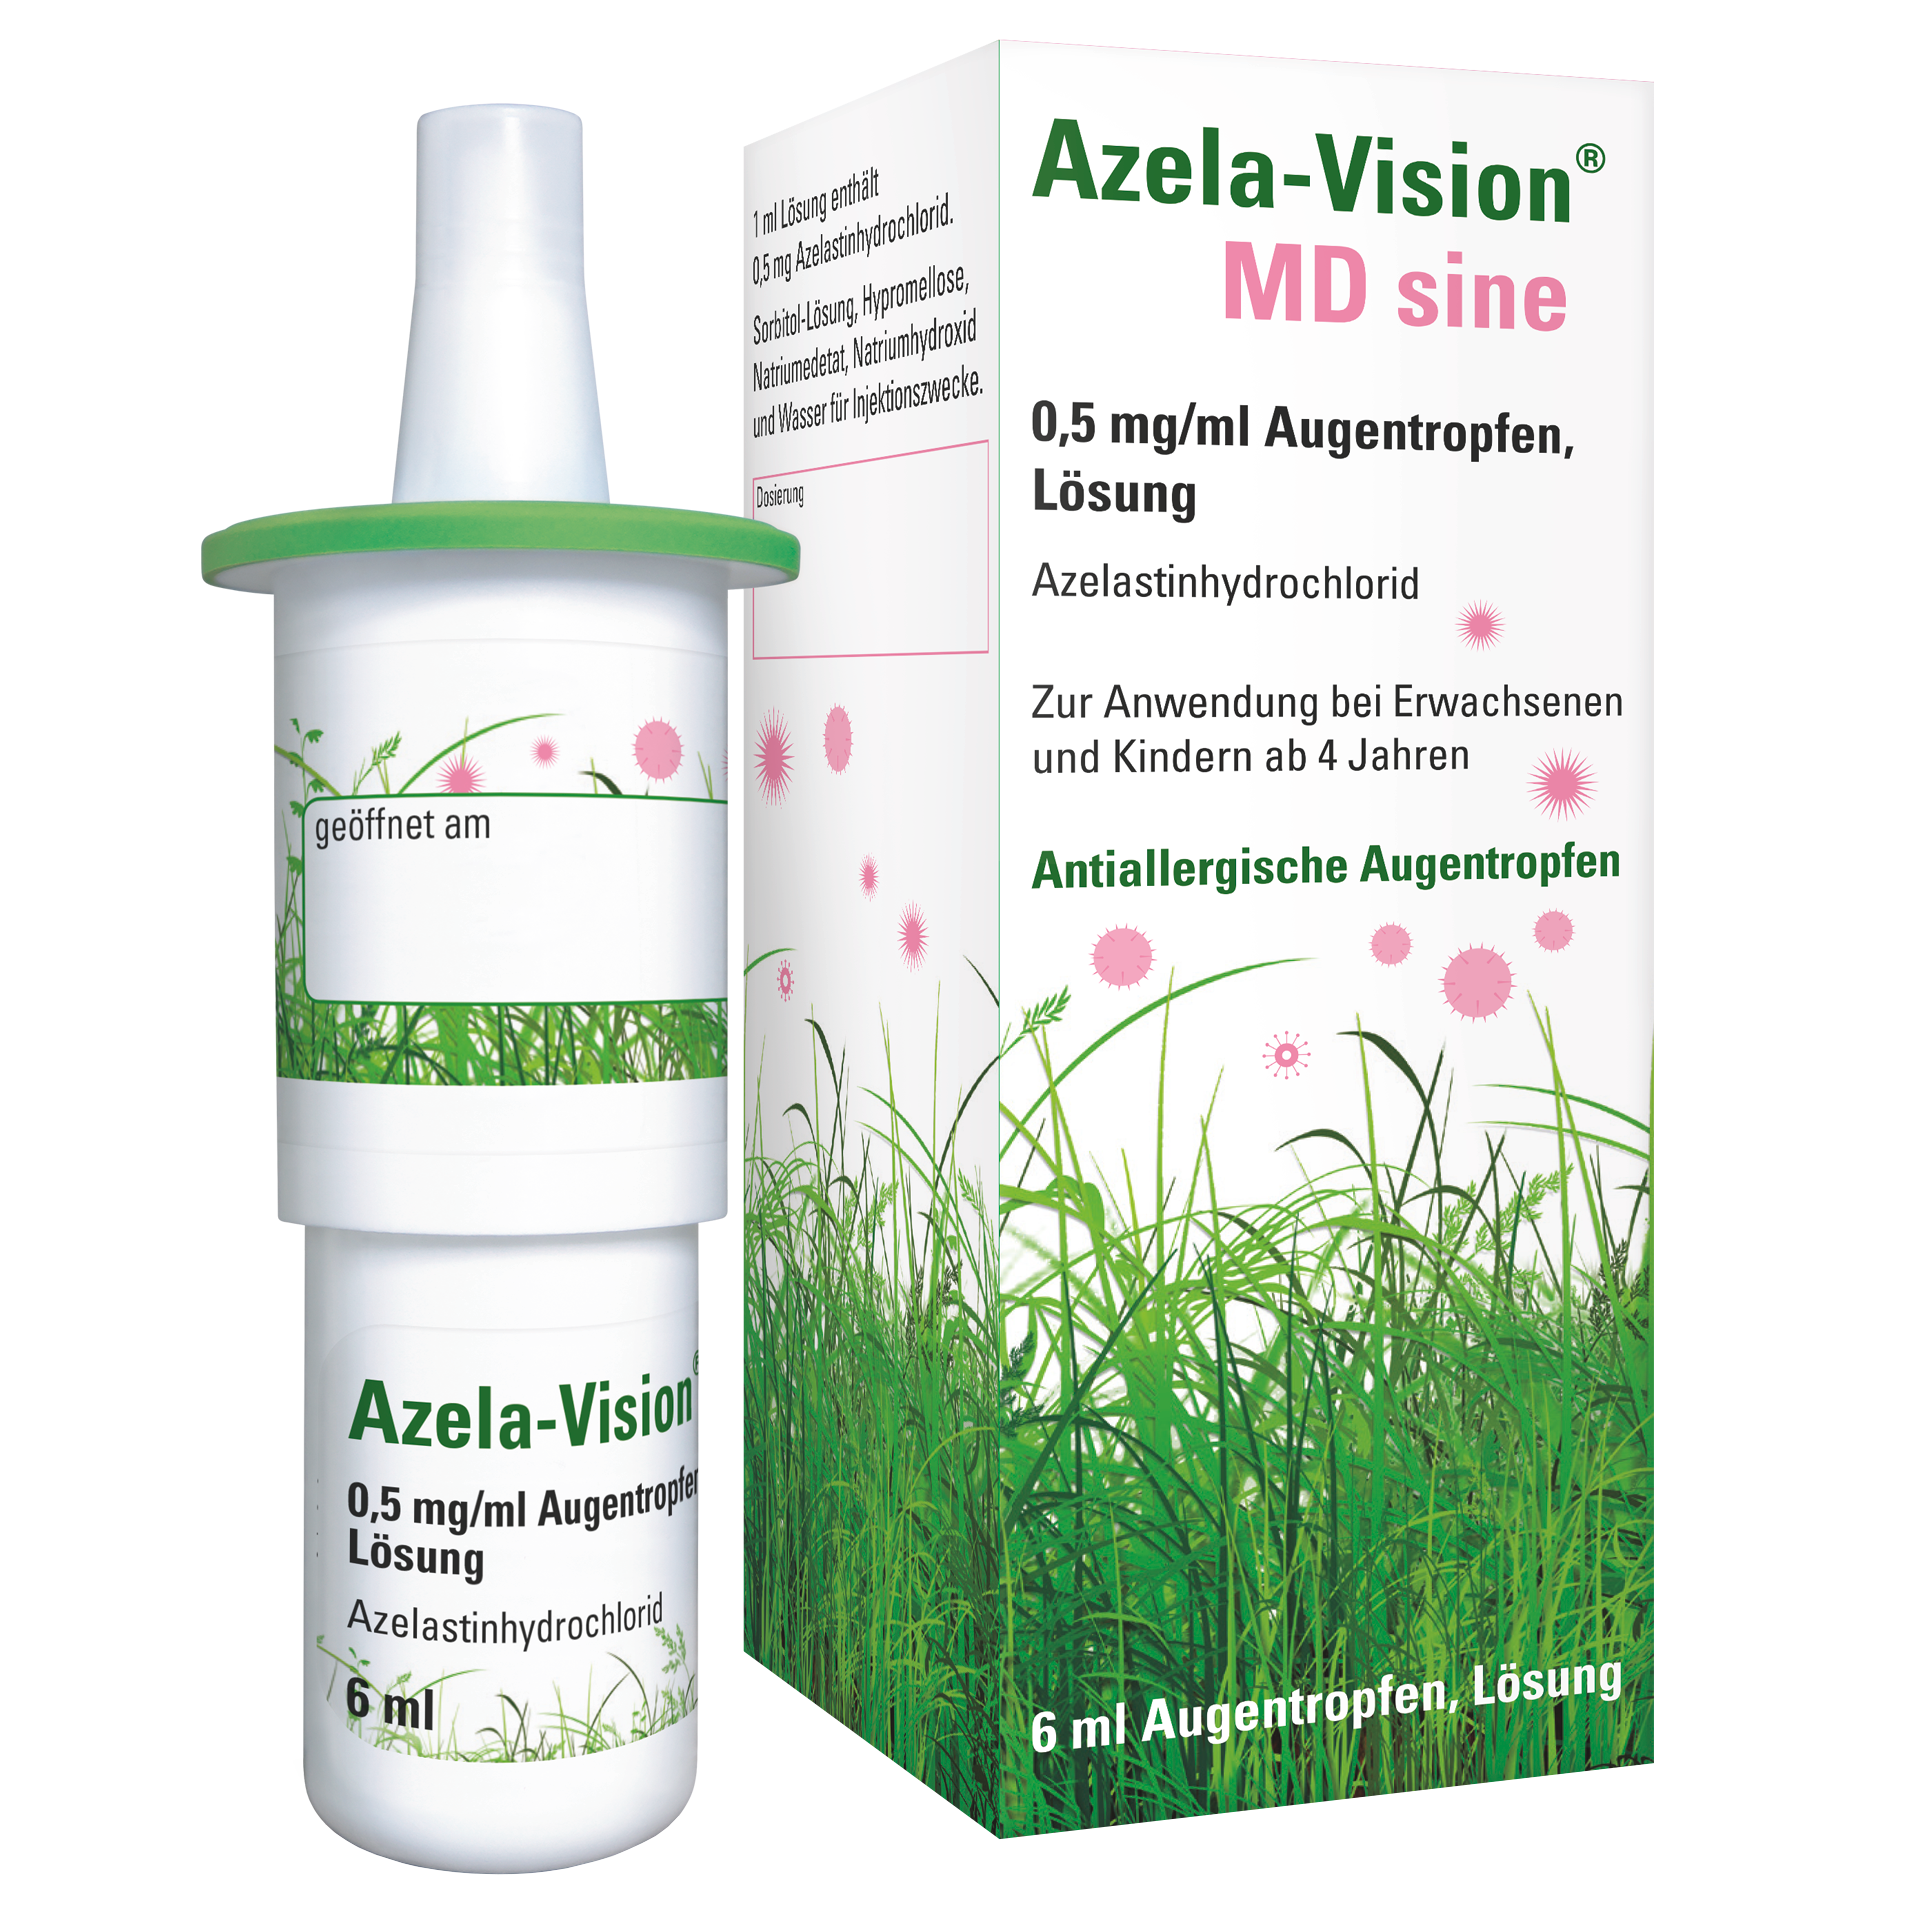 Azela-Vision® MD sine